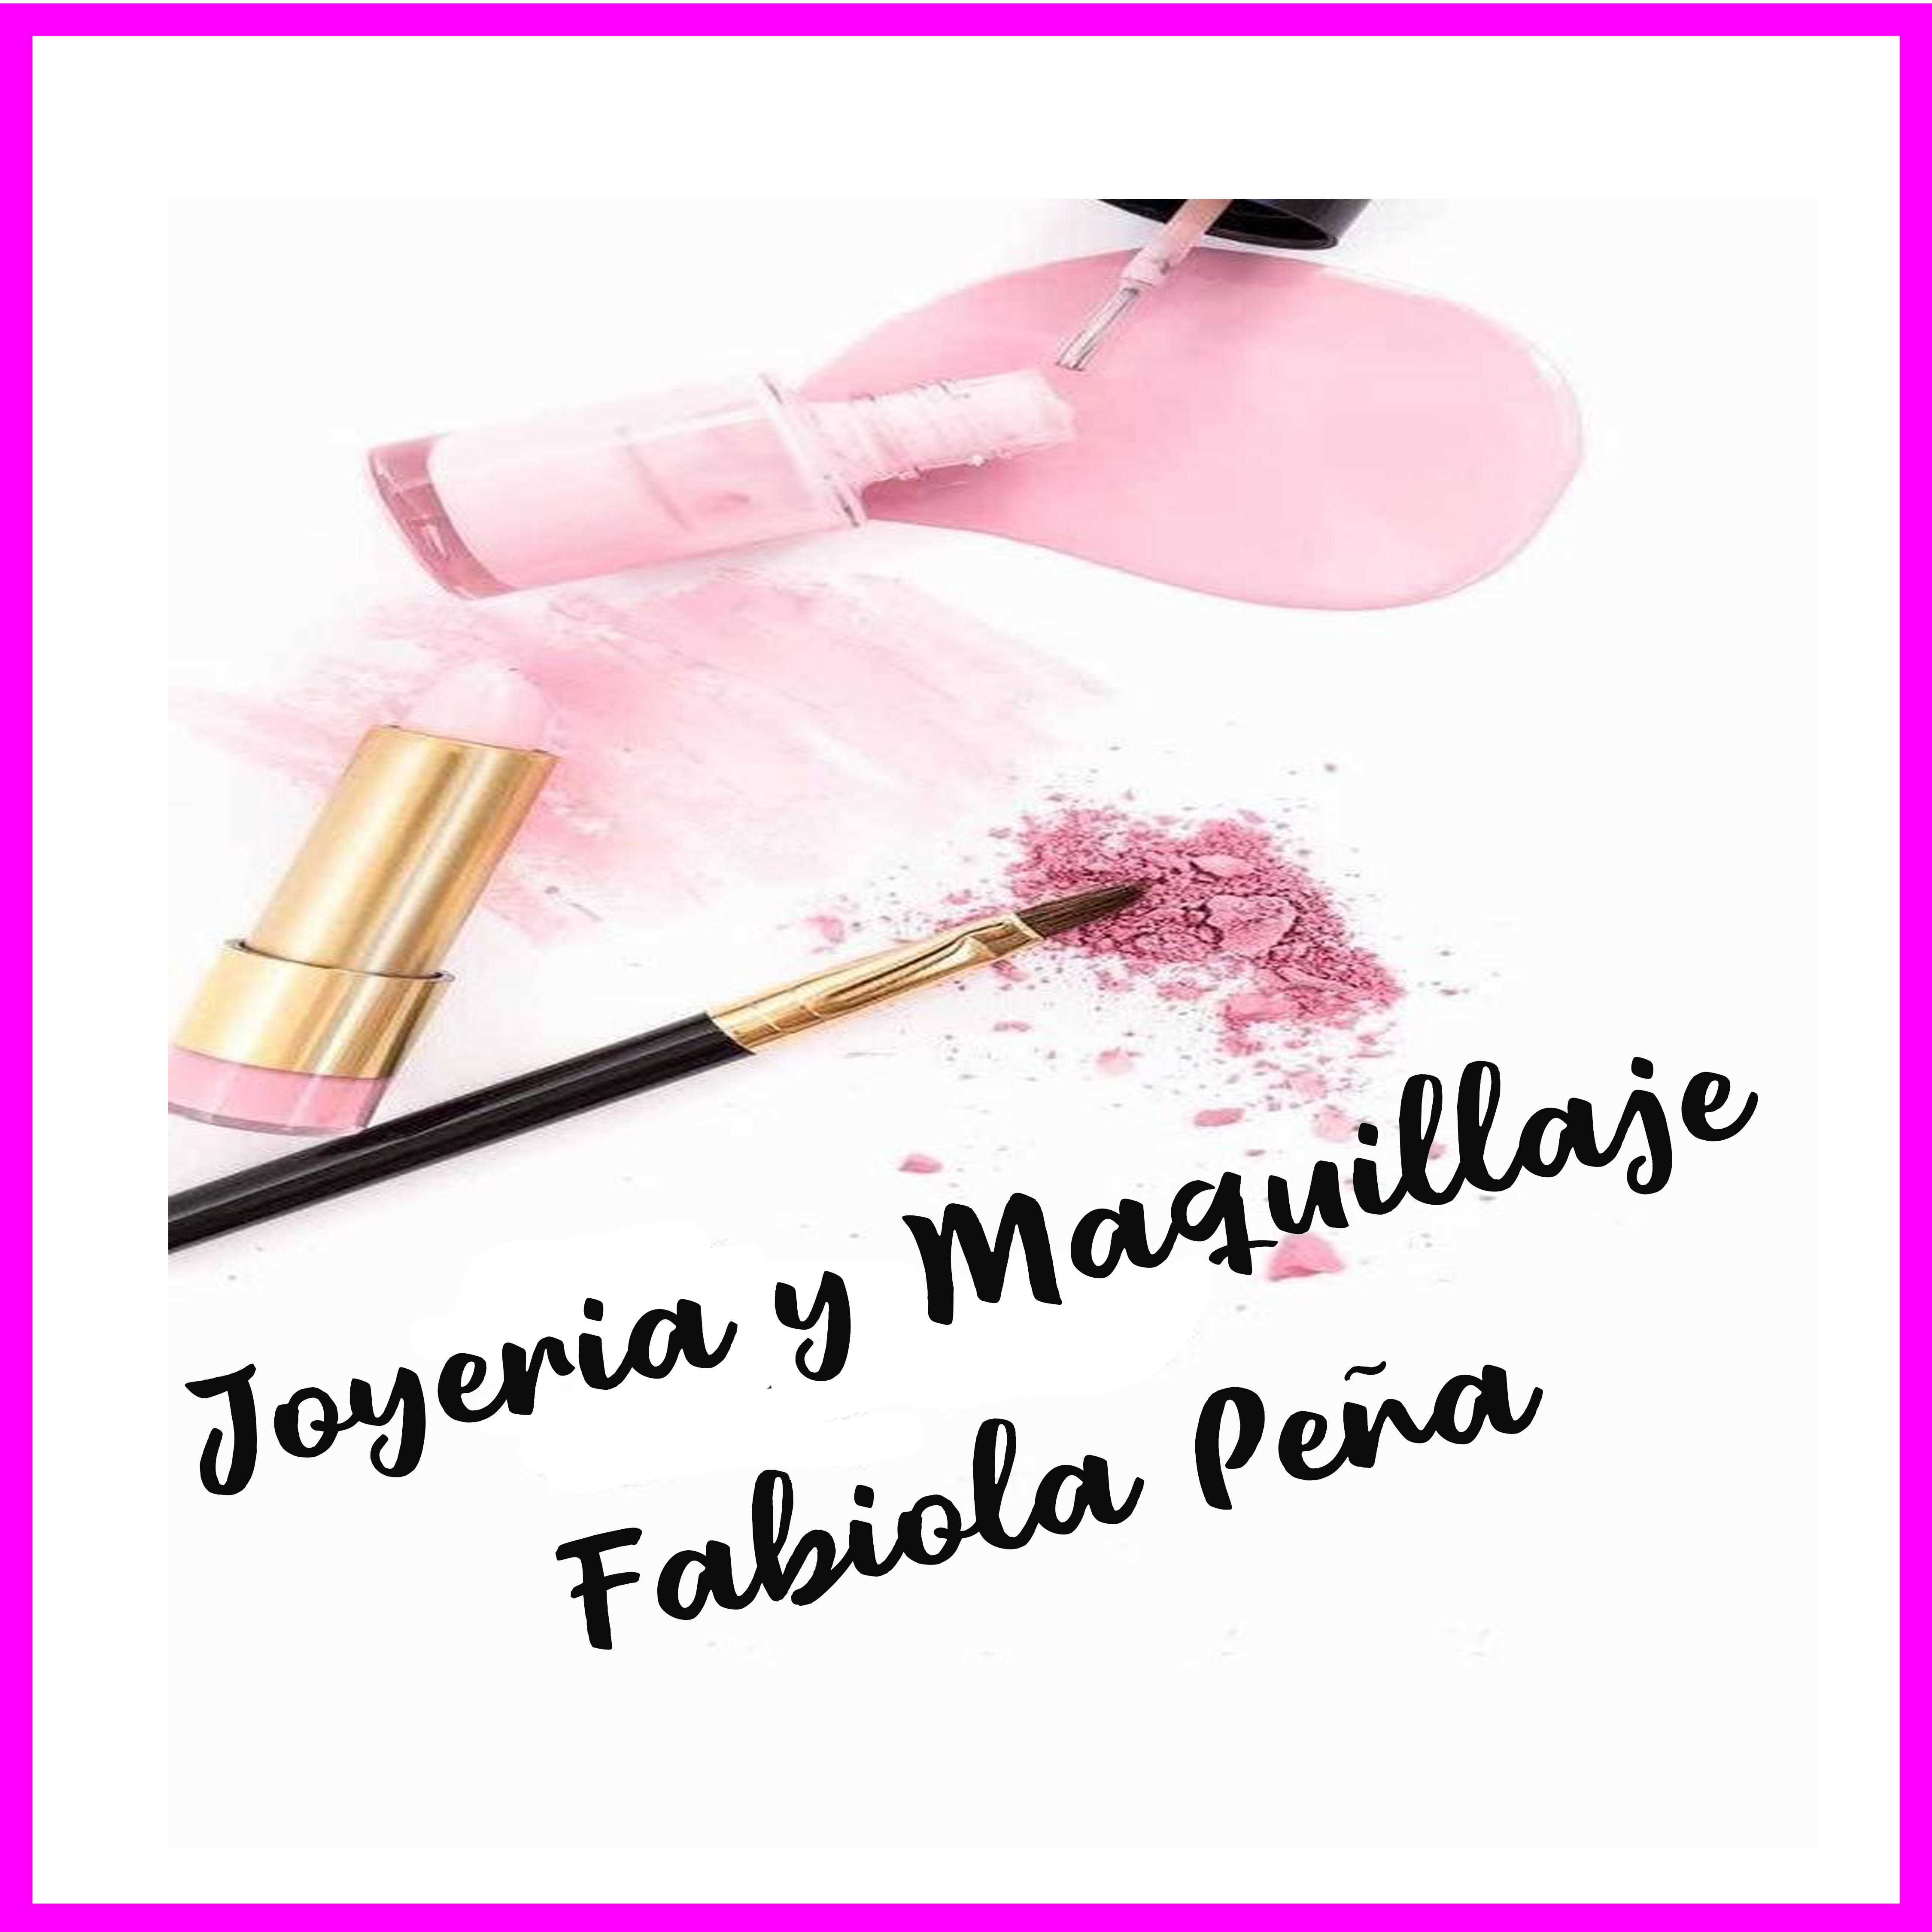 Joyería y maquillaje Fabiola Peña